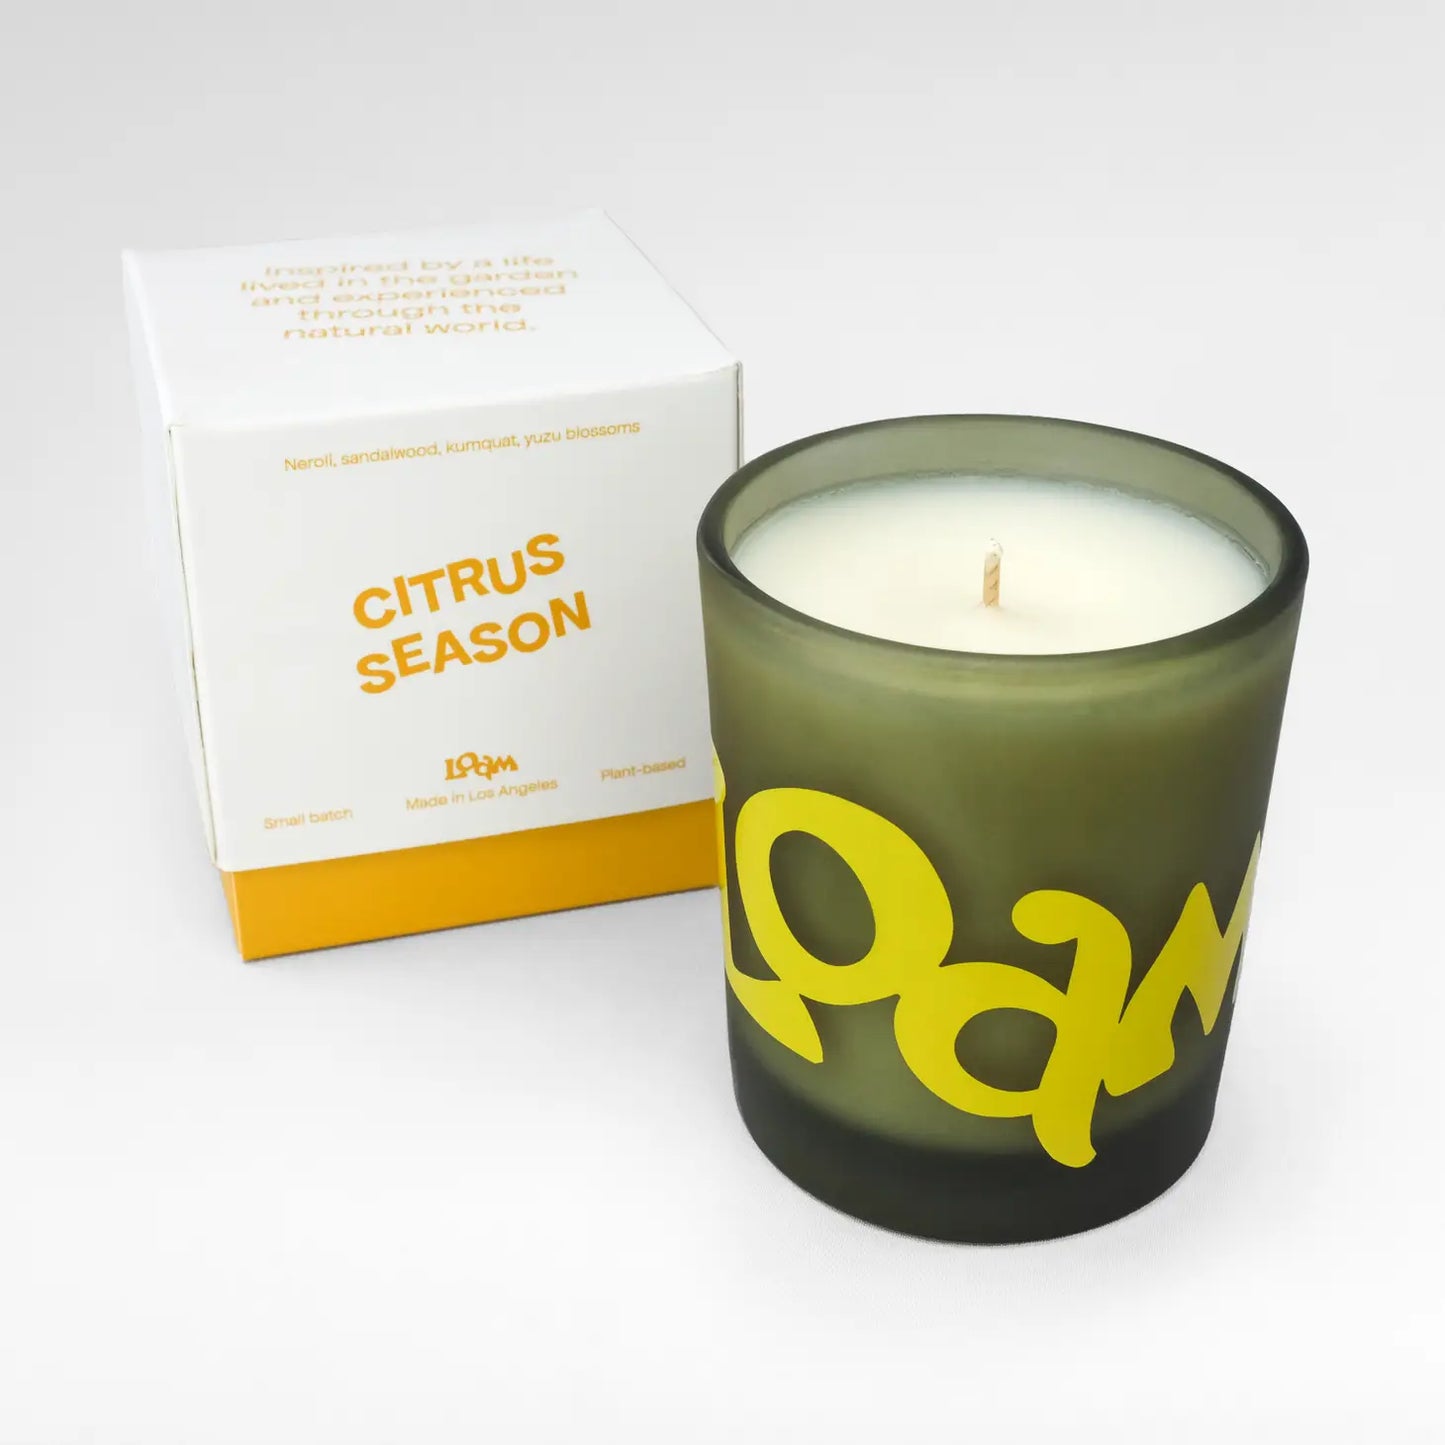 Loam’s Citrus Season Candle